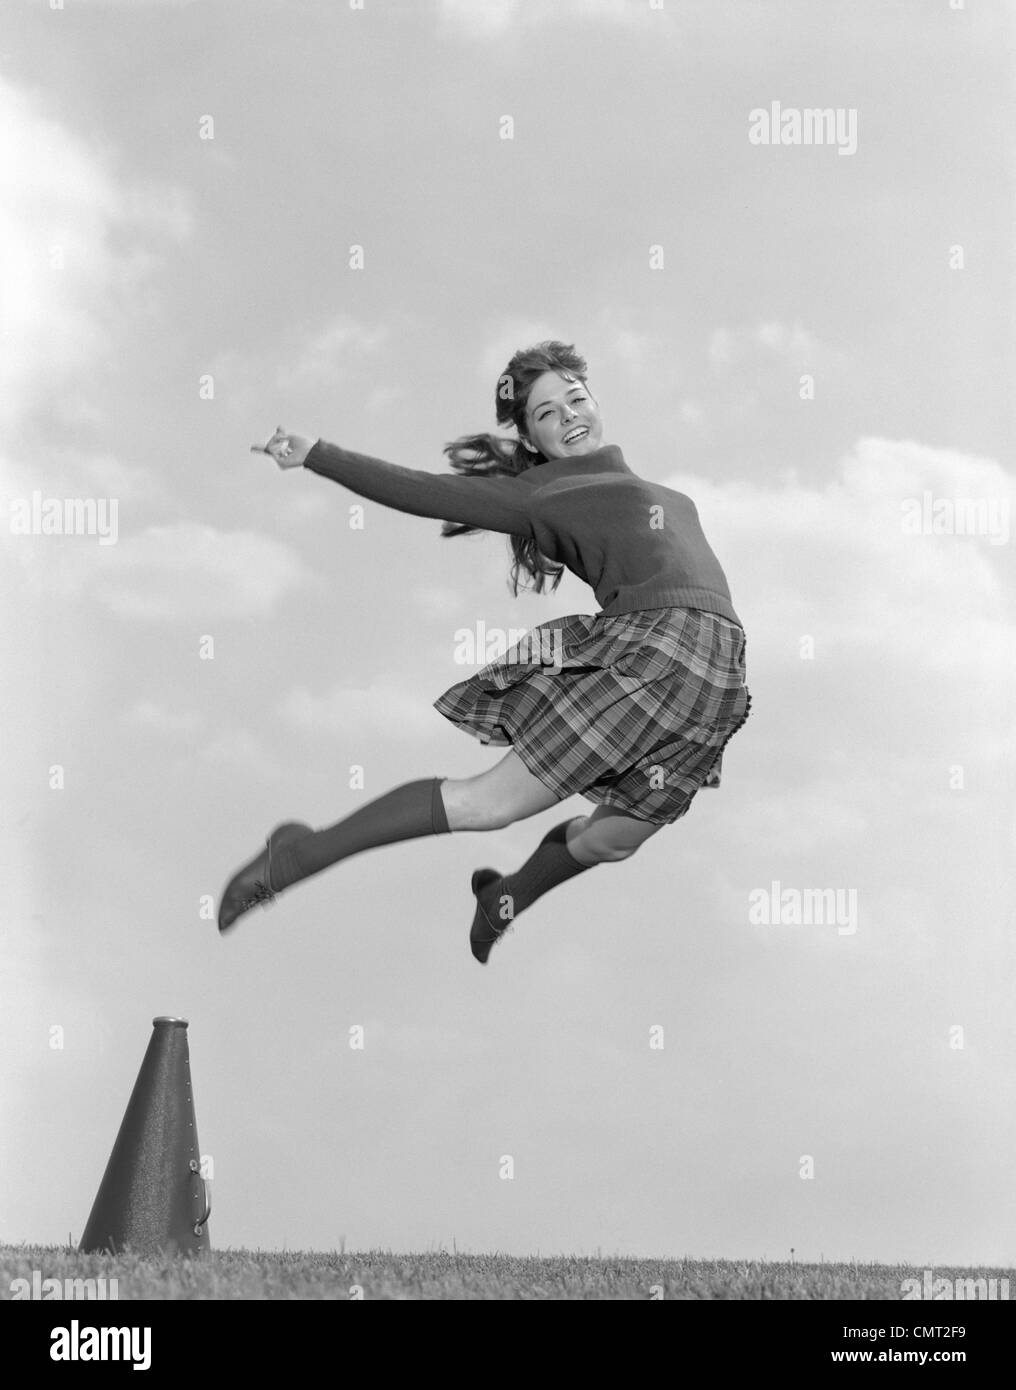 1960 CHEERLEADER EN Jupe à carreaux PULL CHAUSSETTES & sautant dans l'AIR HAUT LOOKING AT CAMERA Banque D'Images